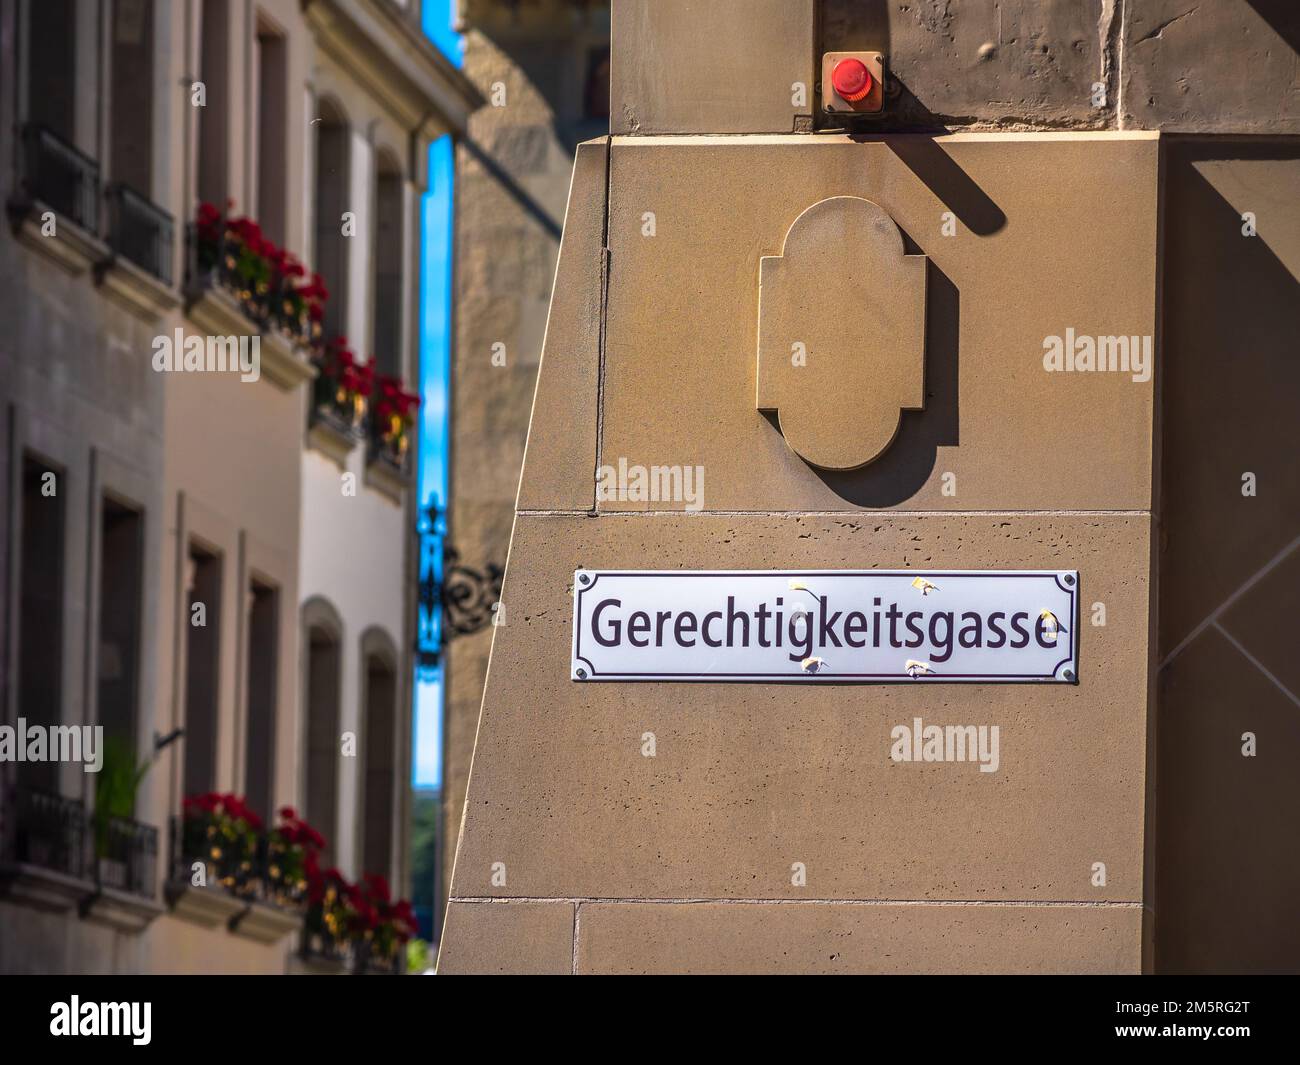 Gerechtigkeitsgasse è il nome della strada nel centro storico di Berna, Svizzera. Traduzione in inglese: justice Alley Foto Stock